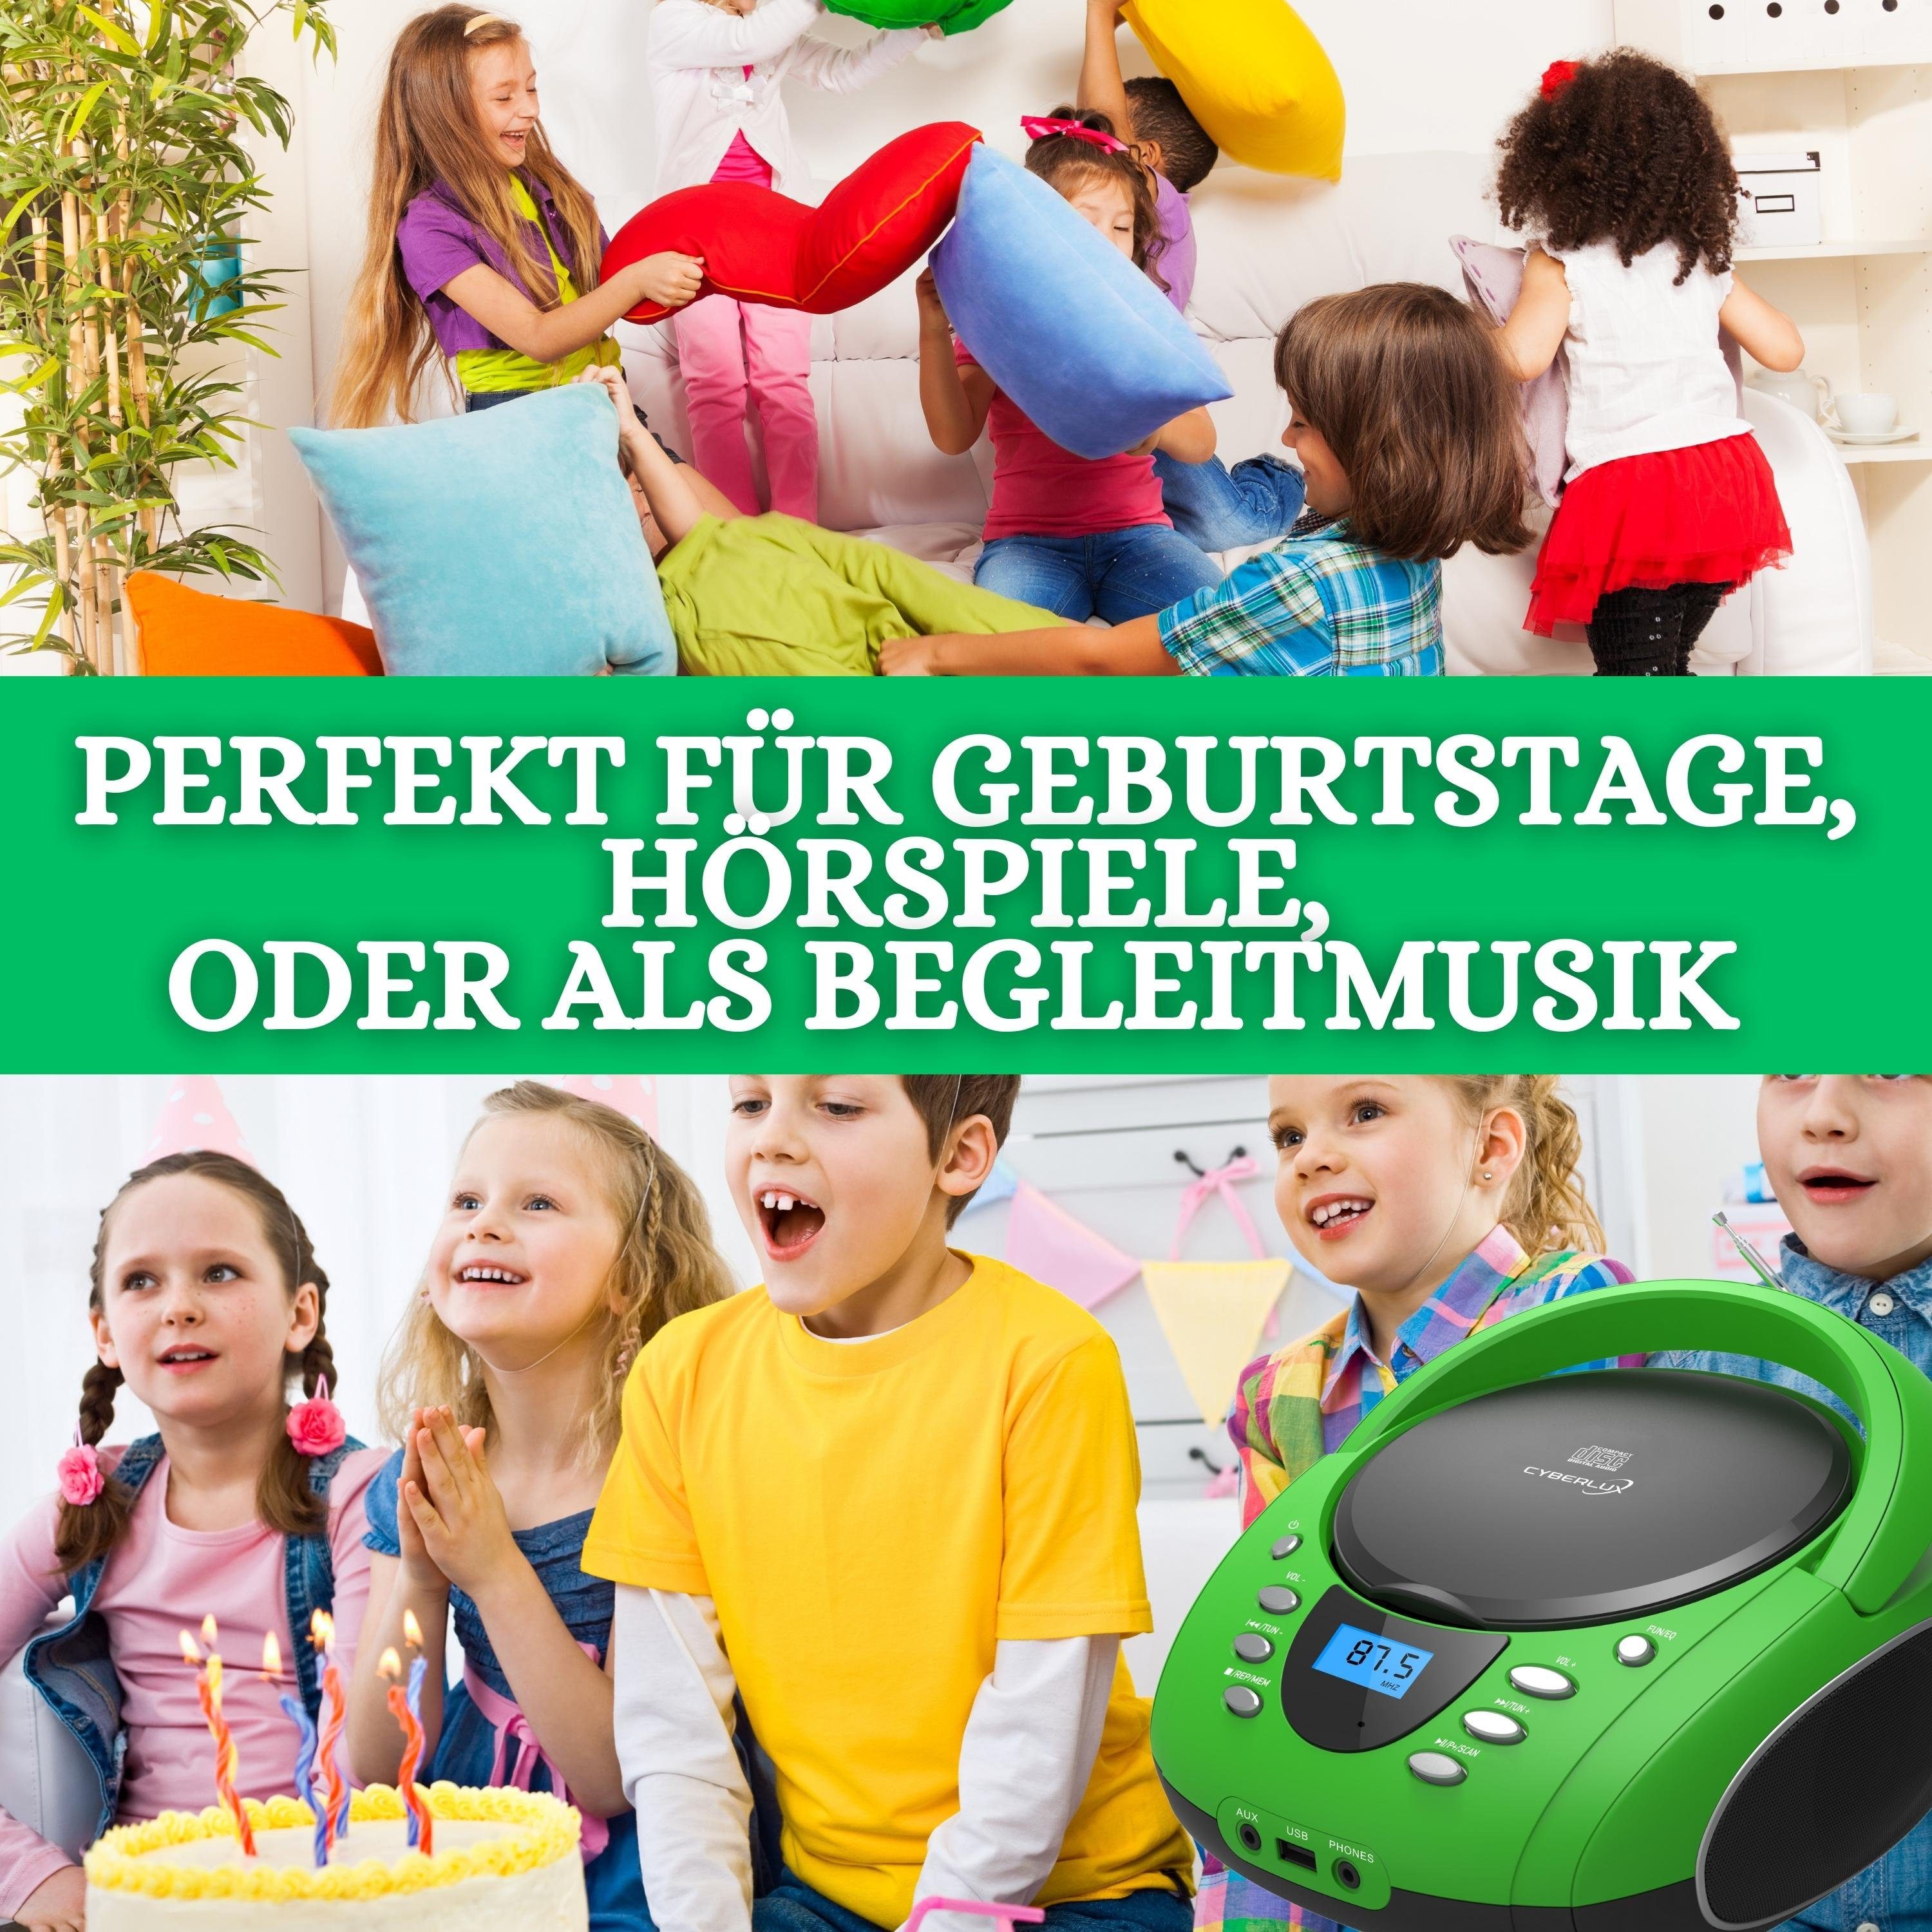 Cyberlux USB) MP3 CD (CD, CL-700 tragbar, tragbarer Player Kinder FM Musikbox, Boombox, CD-Player mit Radio